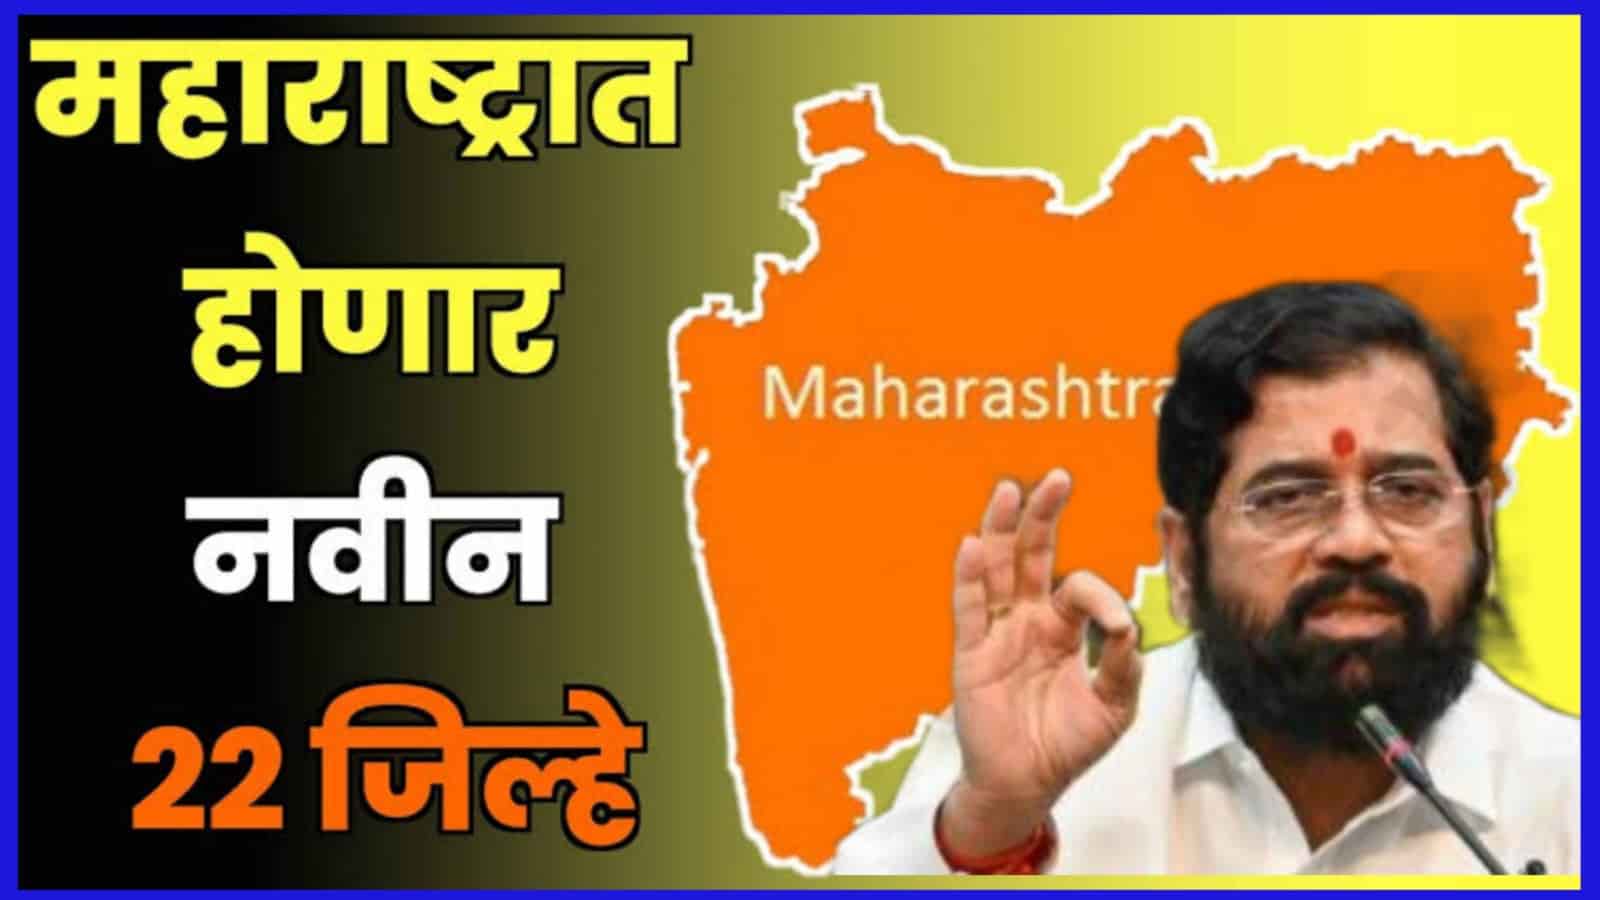 राज्यात 22 नवे जिल्हे प्रस्तावित, जाणून घ्या कोणत्या जिल्ह्यांचे होऊ शकते विभाजन |Maharashtra State 22 new districts proposed , know which districts may be divided